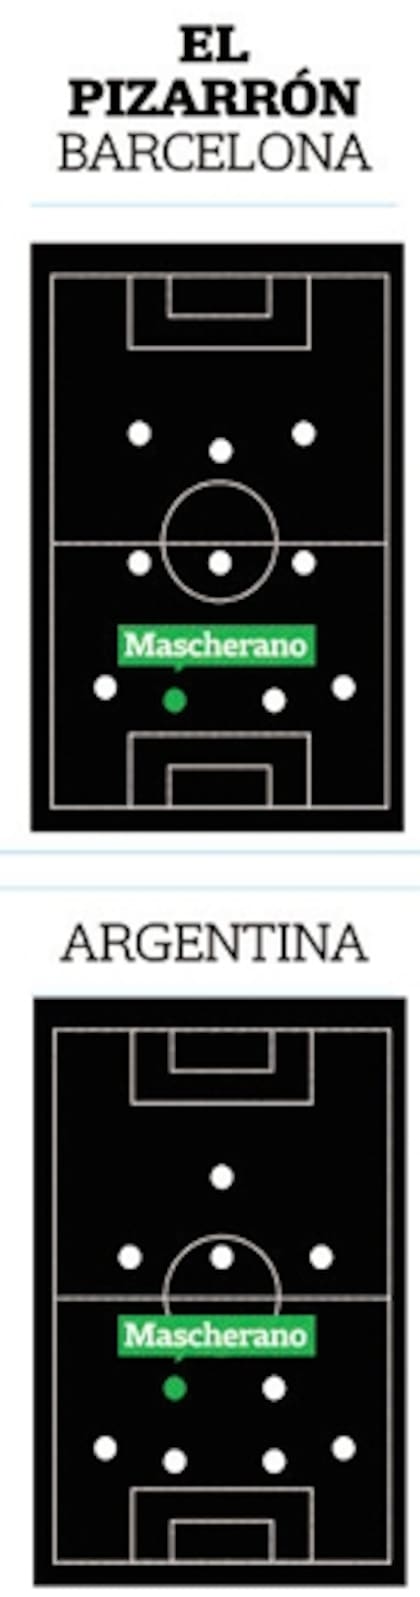 Las posiciones de Mascherano en Barcelona y en la selección